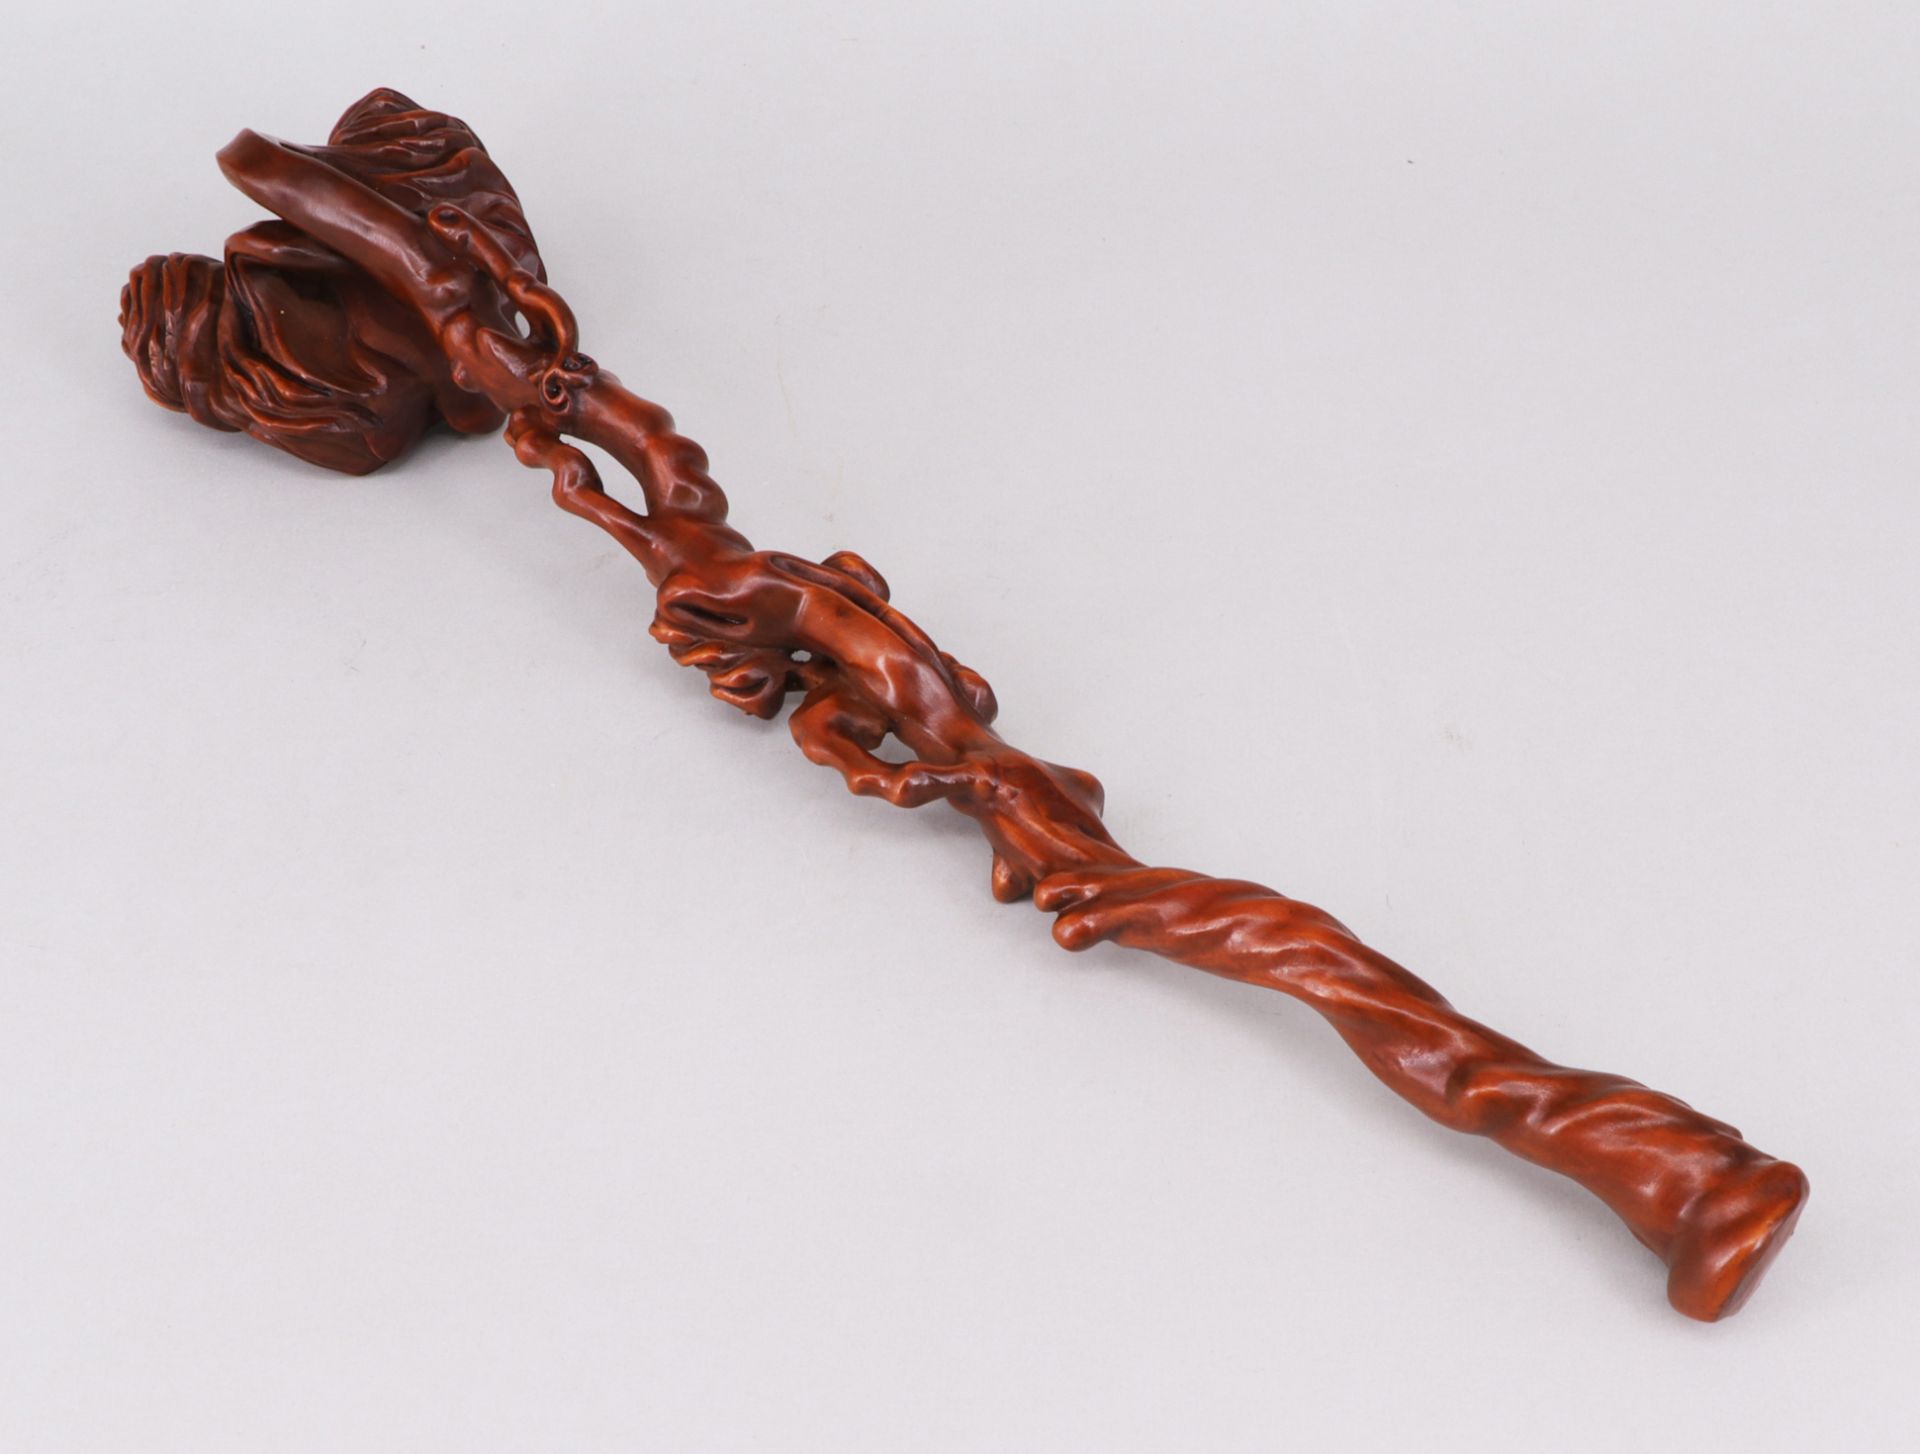 Holzzepter in Form eines Pilzes, raffiniert und aufwändig geschnitzt, L. 31 cm - Image 3 of 3